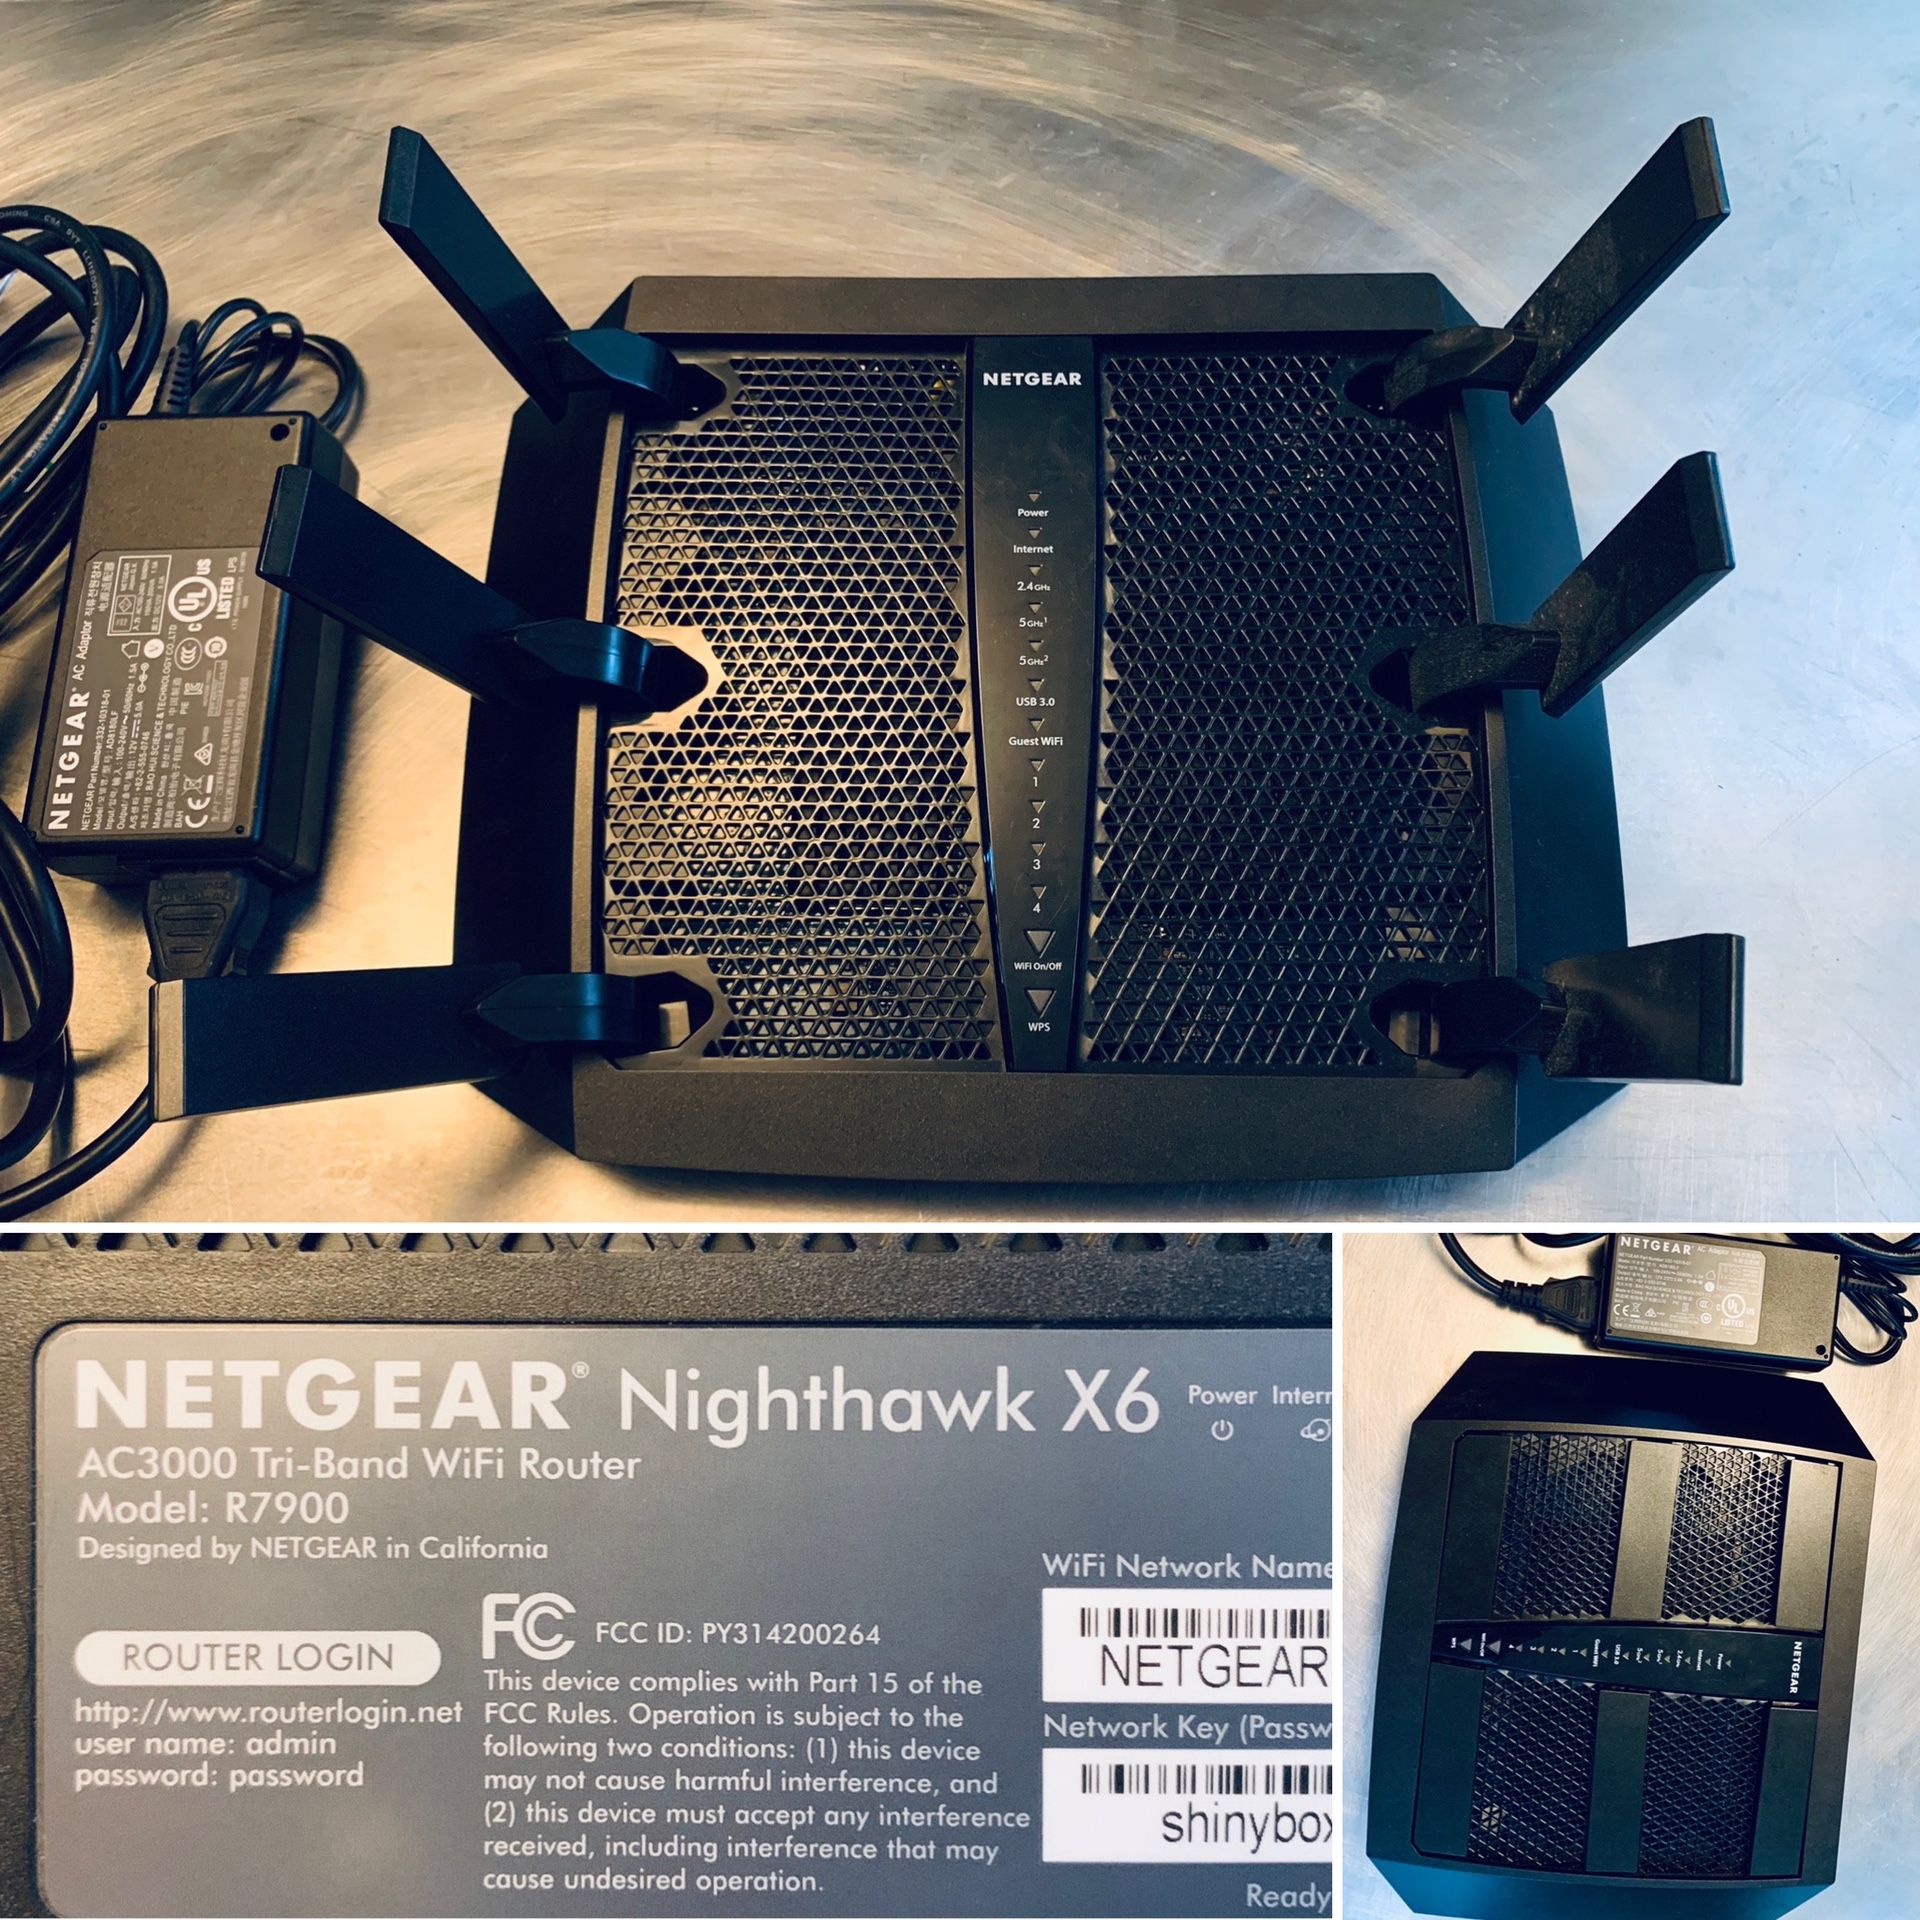 Netgear Nighthawk X6 Tri-Band WiFi Router - Gaming!